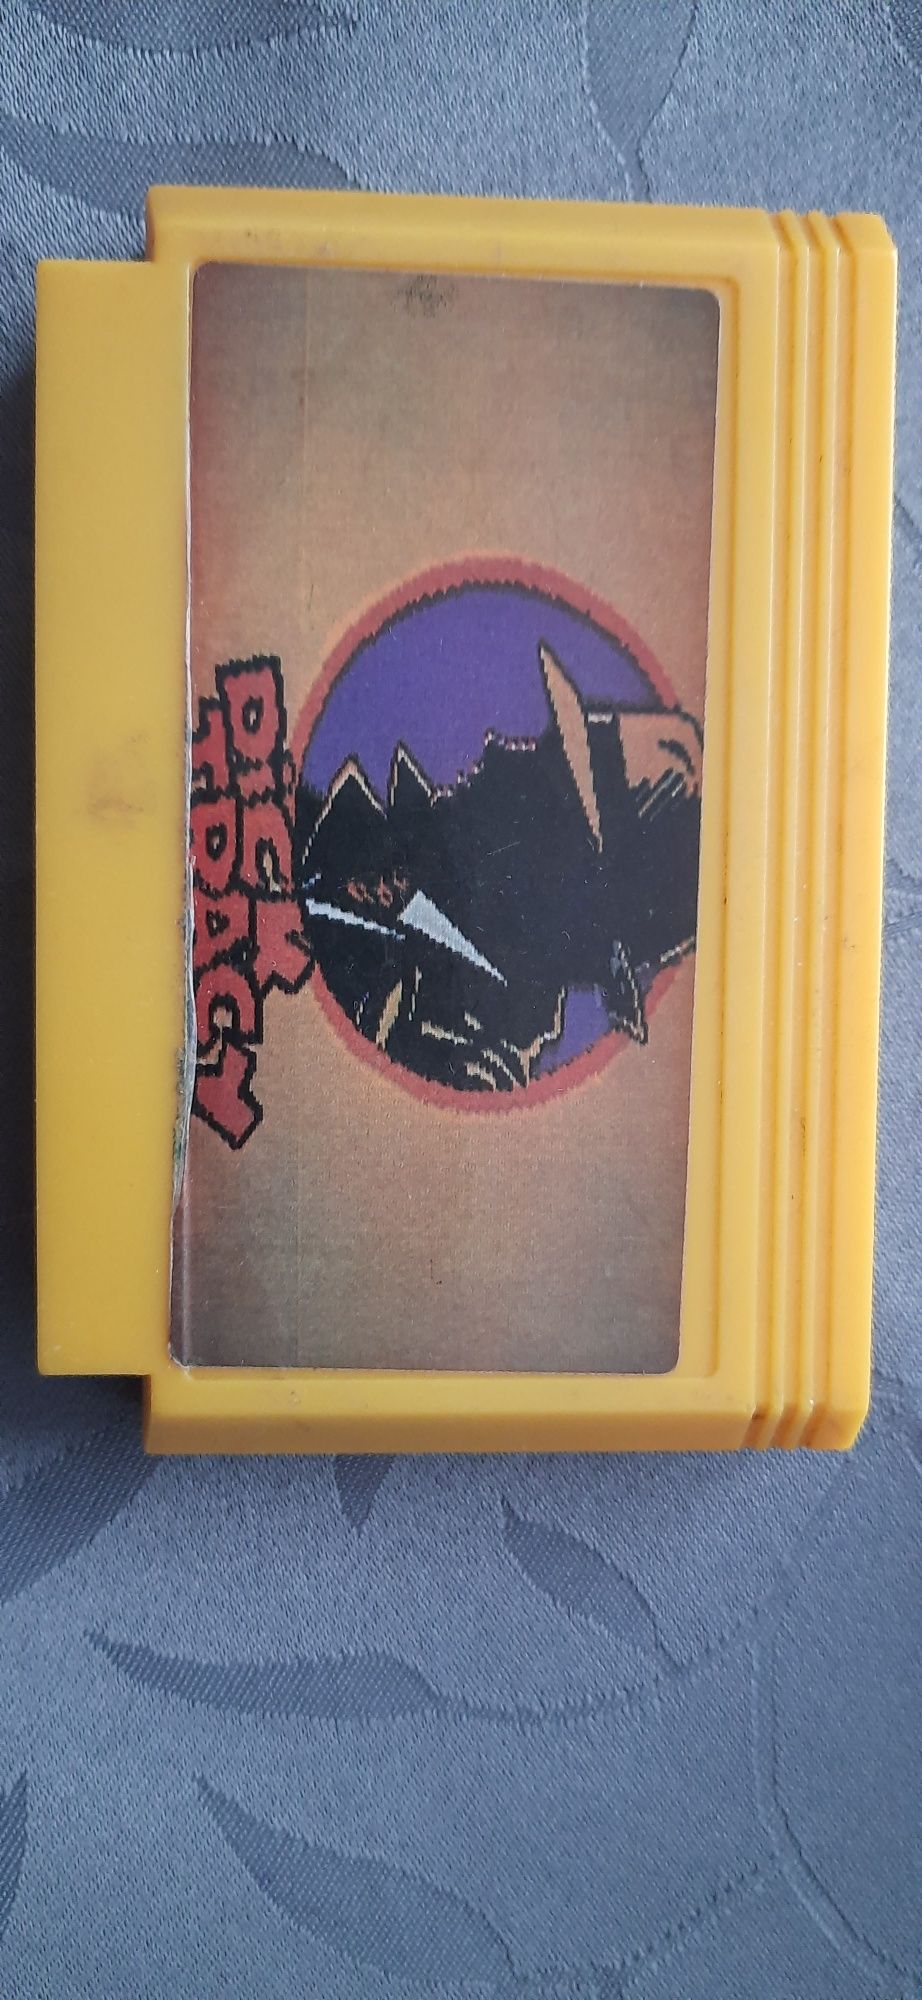 Dick Tracy Famicom scalak pegazus kolekcjonerski